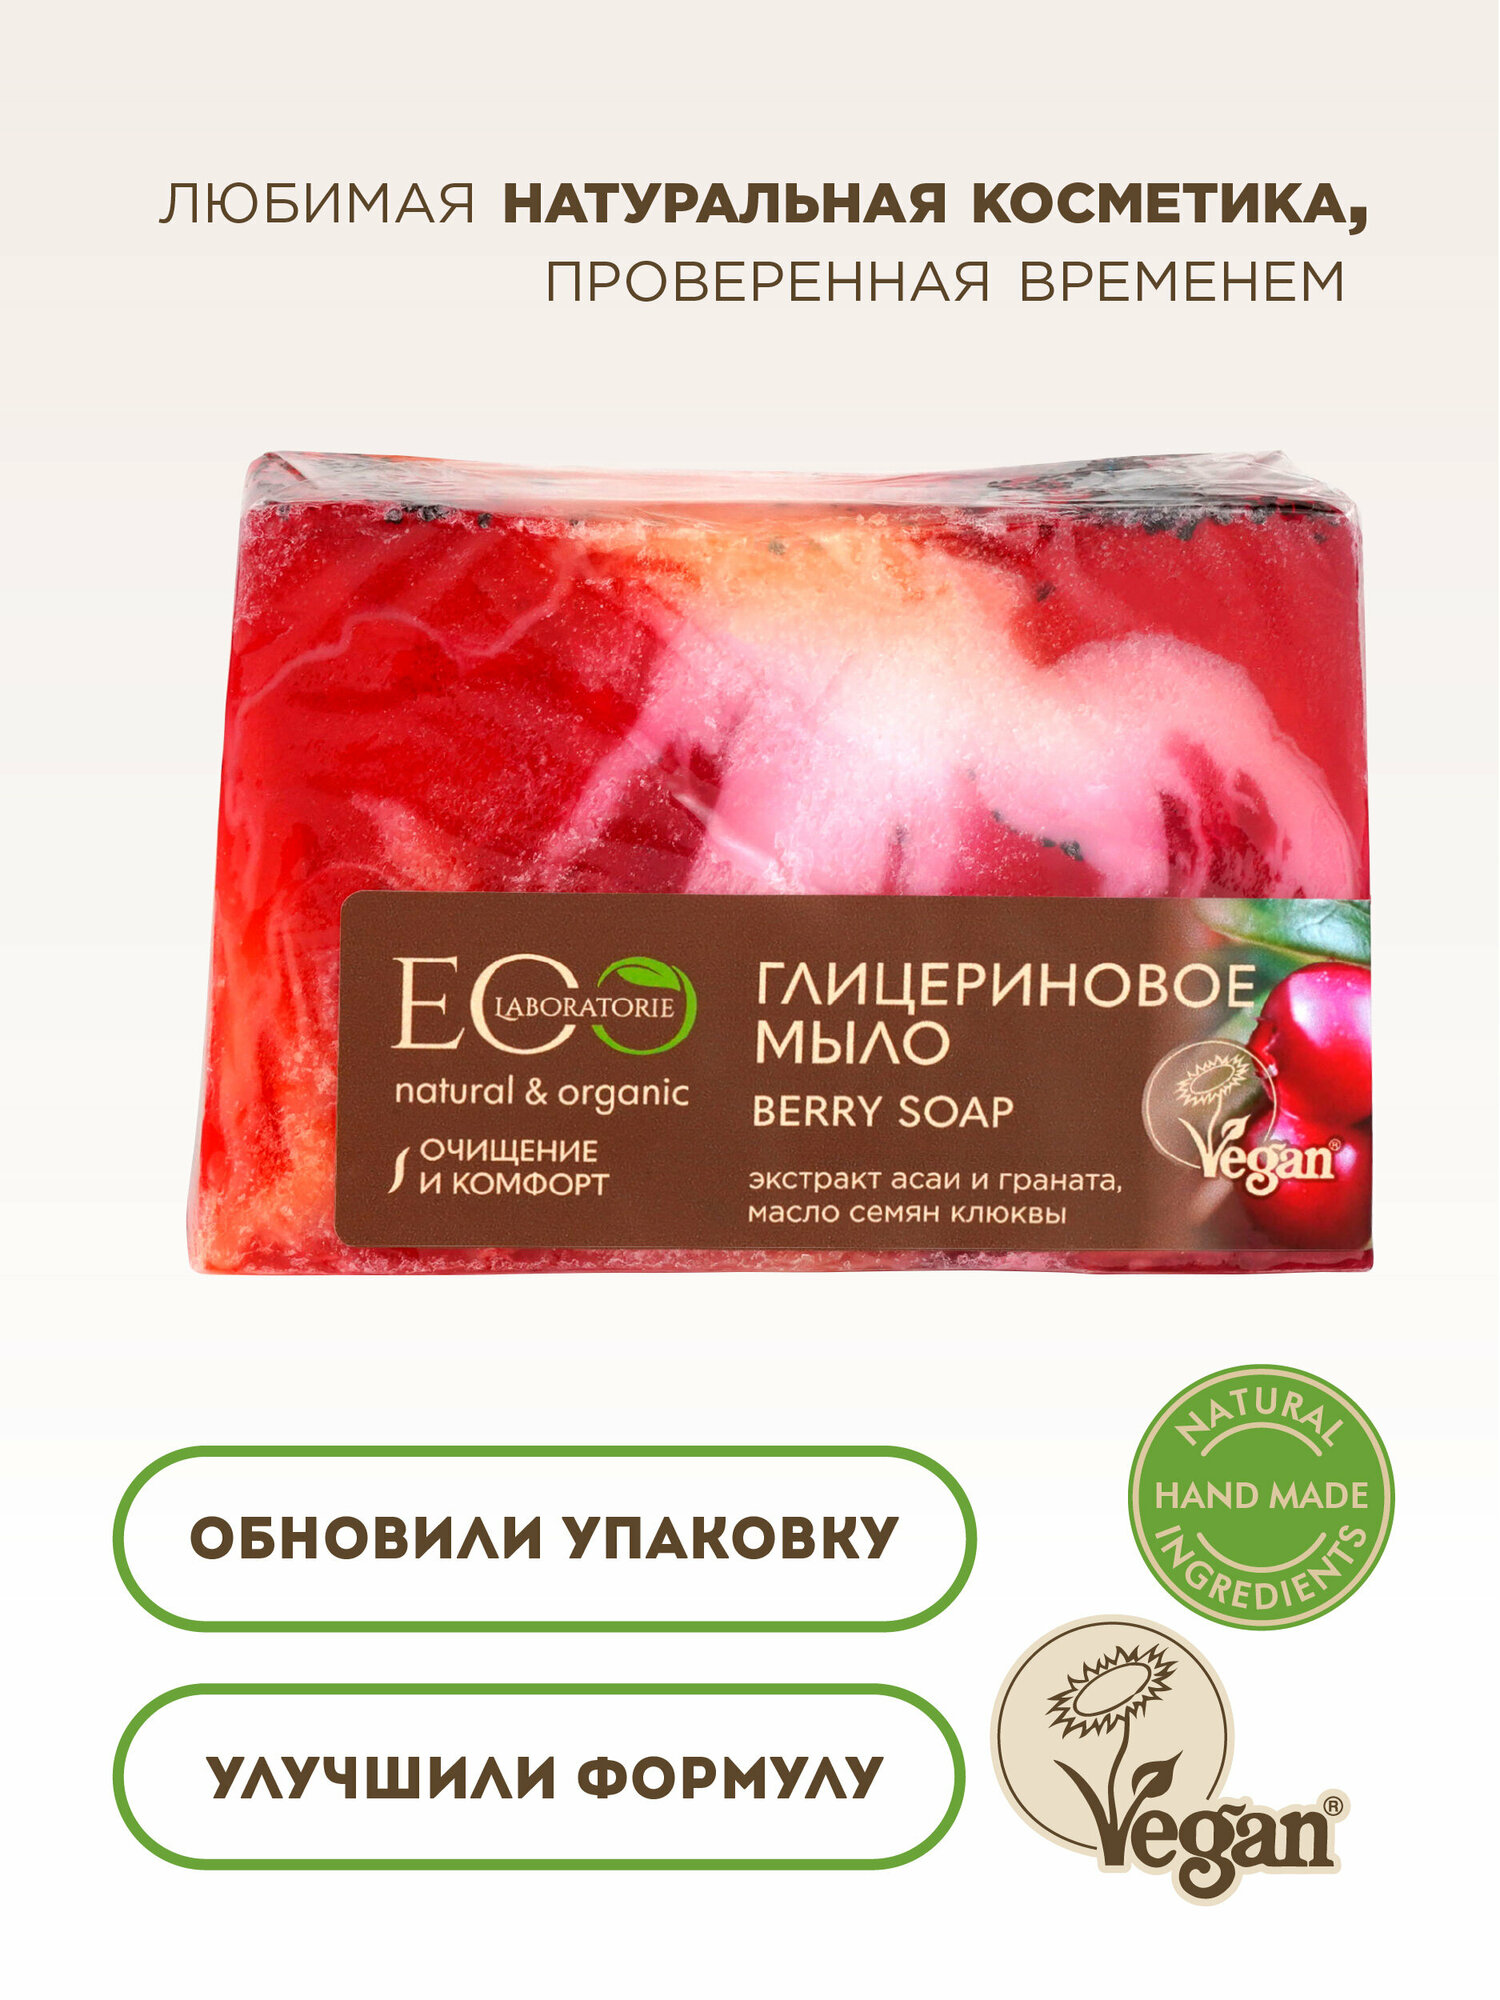 EO LABORATORIE Мыло глицериновое "BERRY SOAP", 130 гр